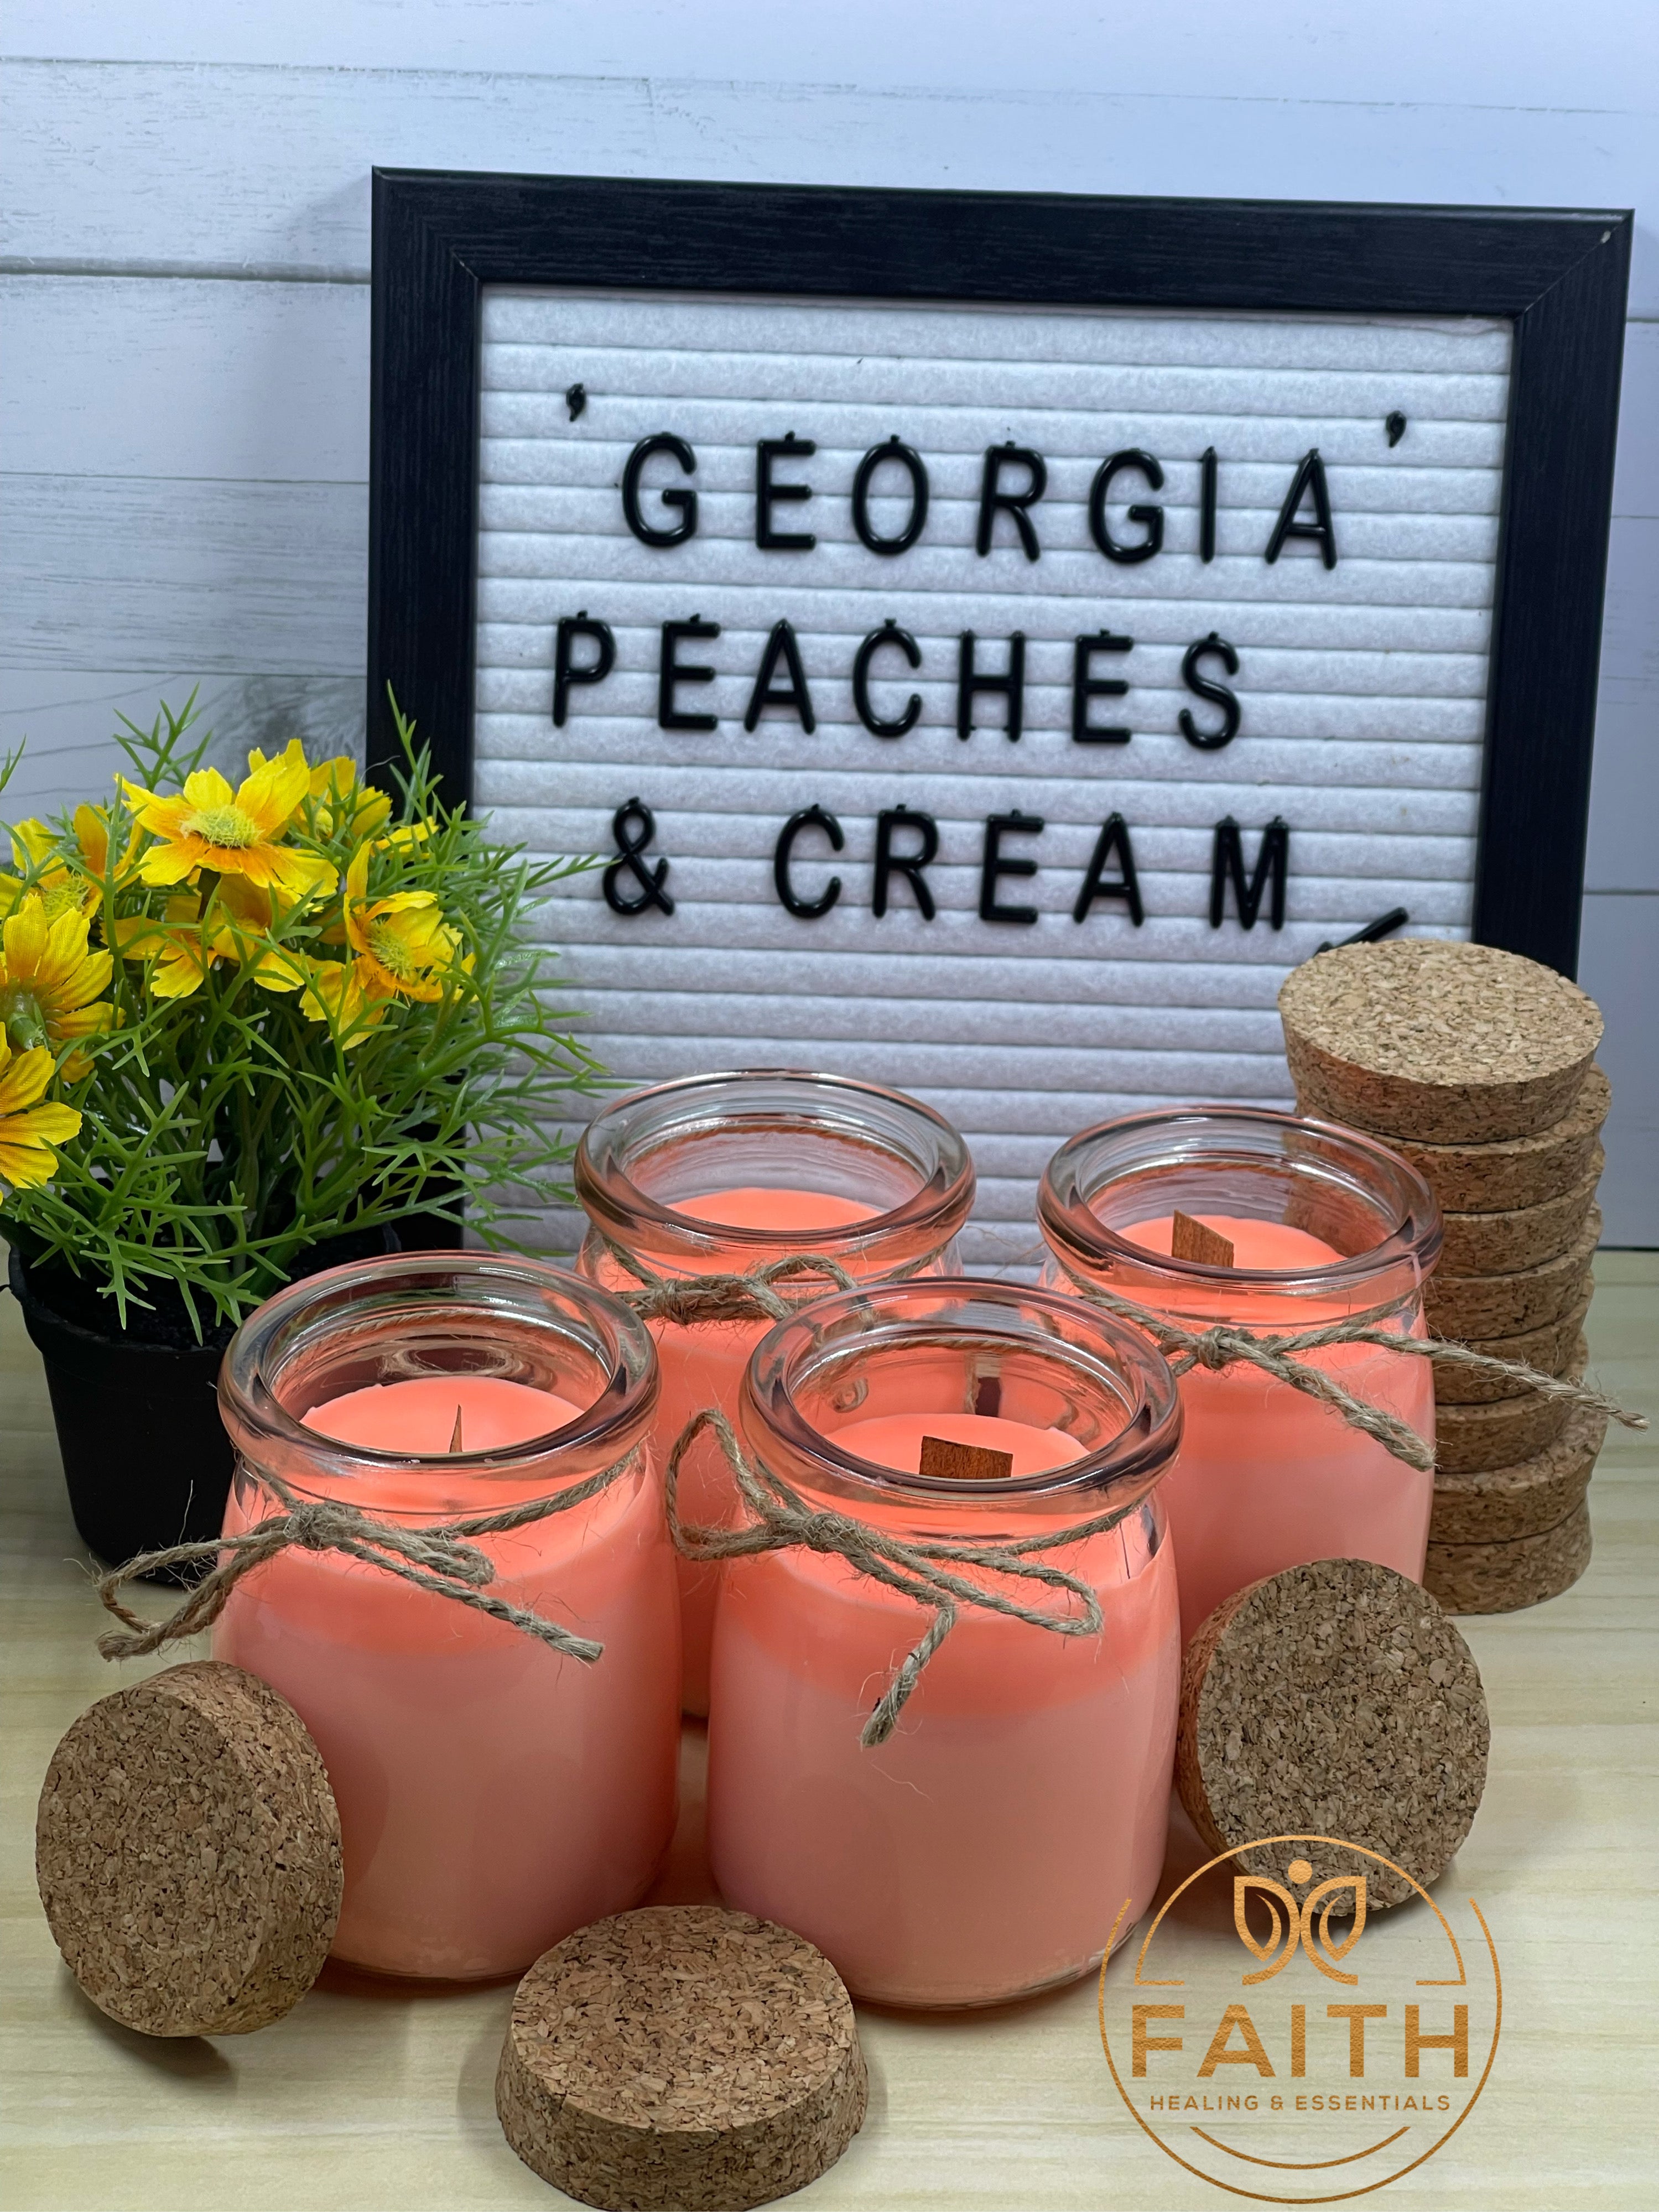 "Georgia Peaches & Crème"